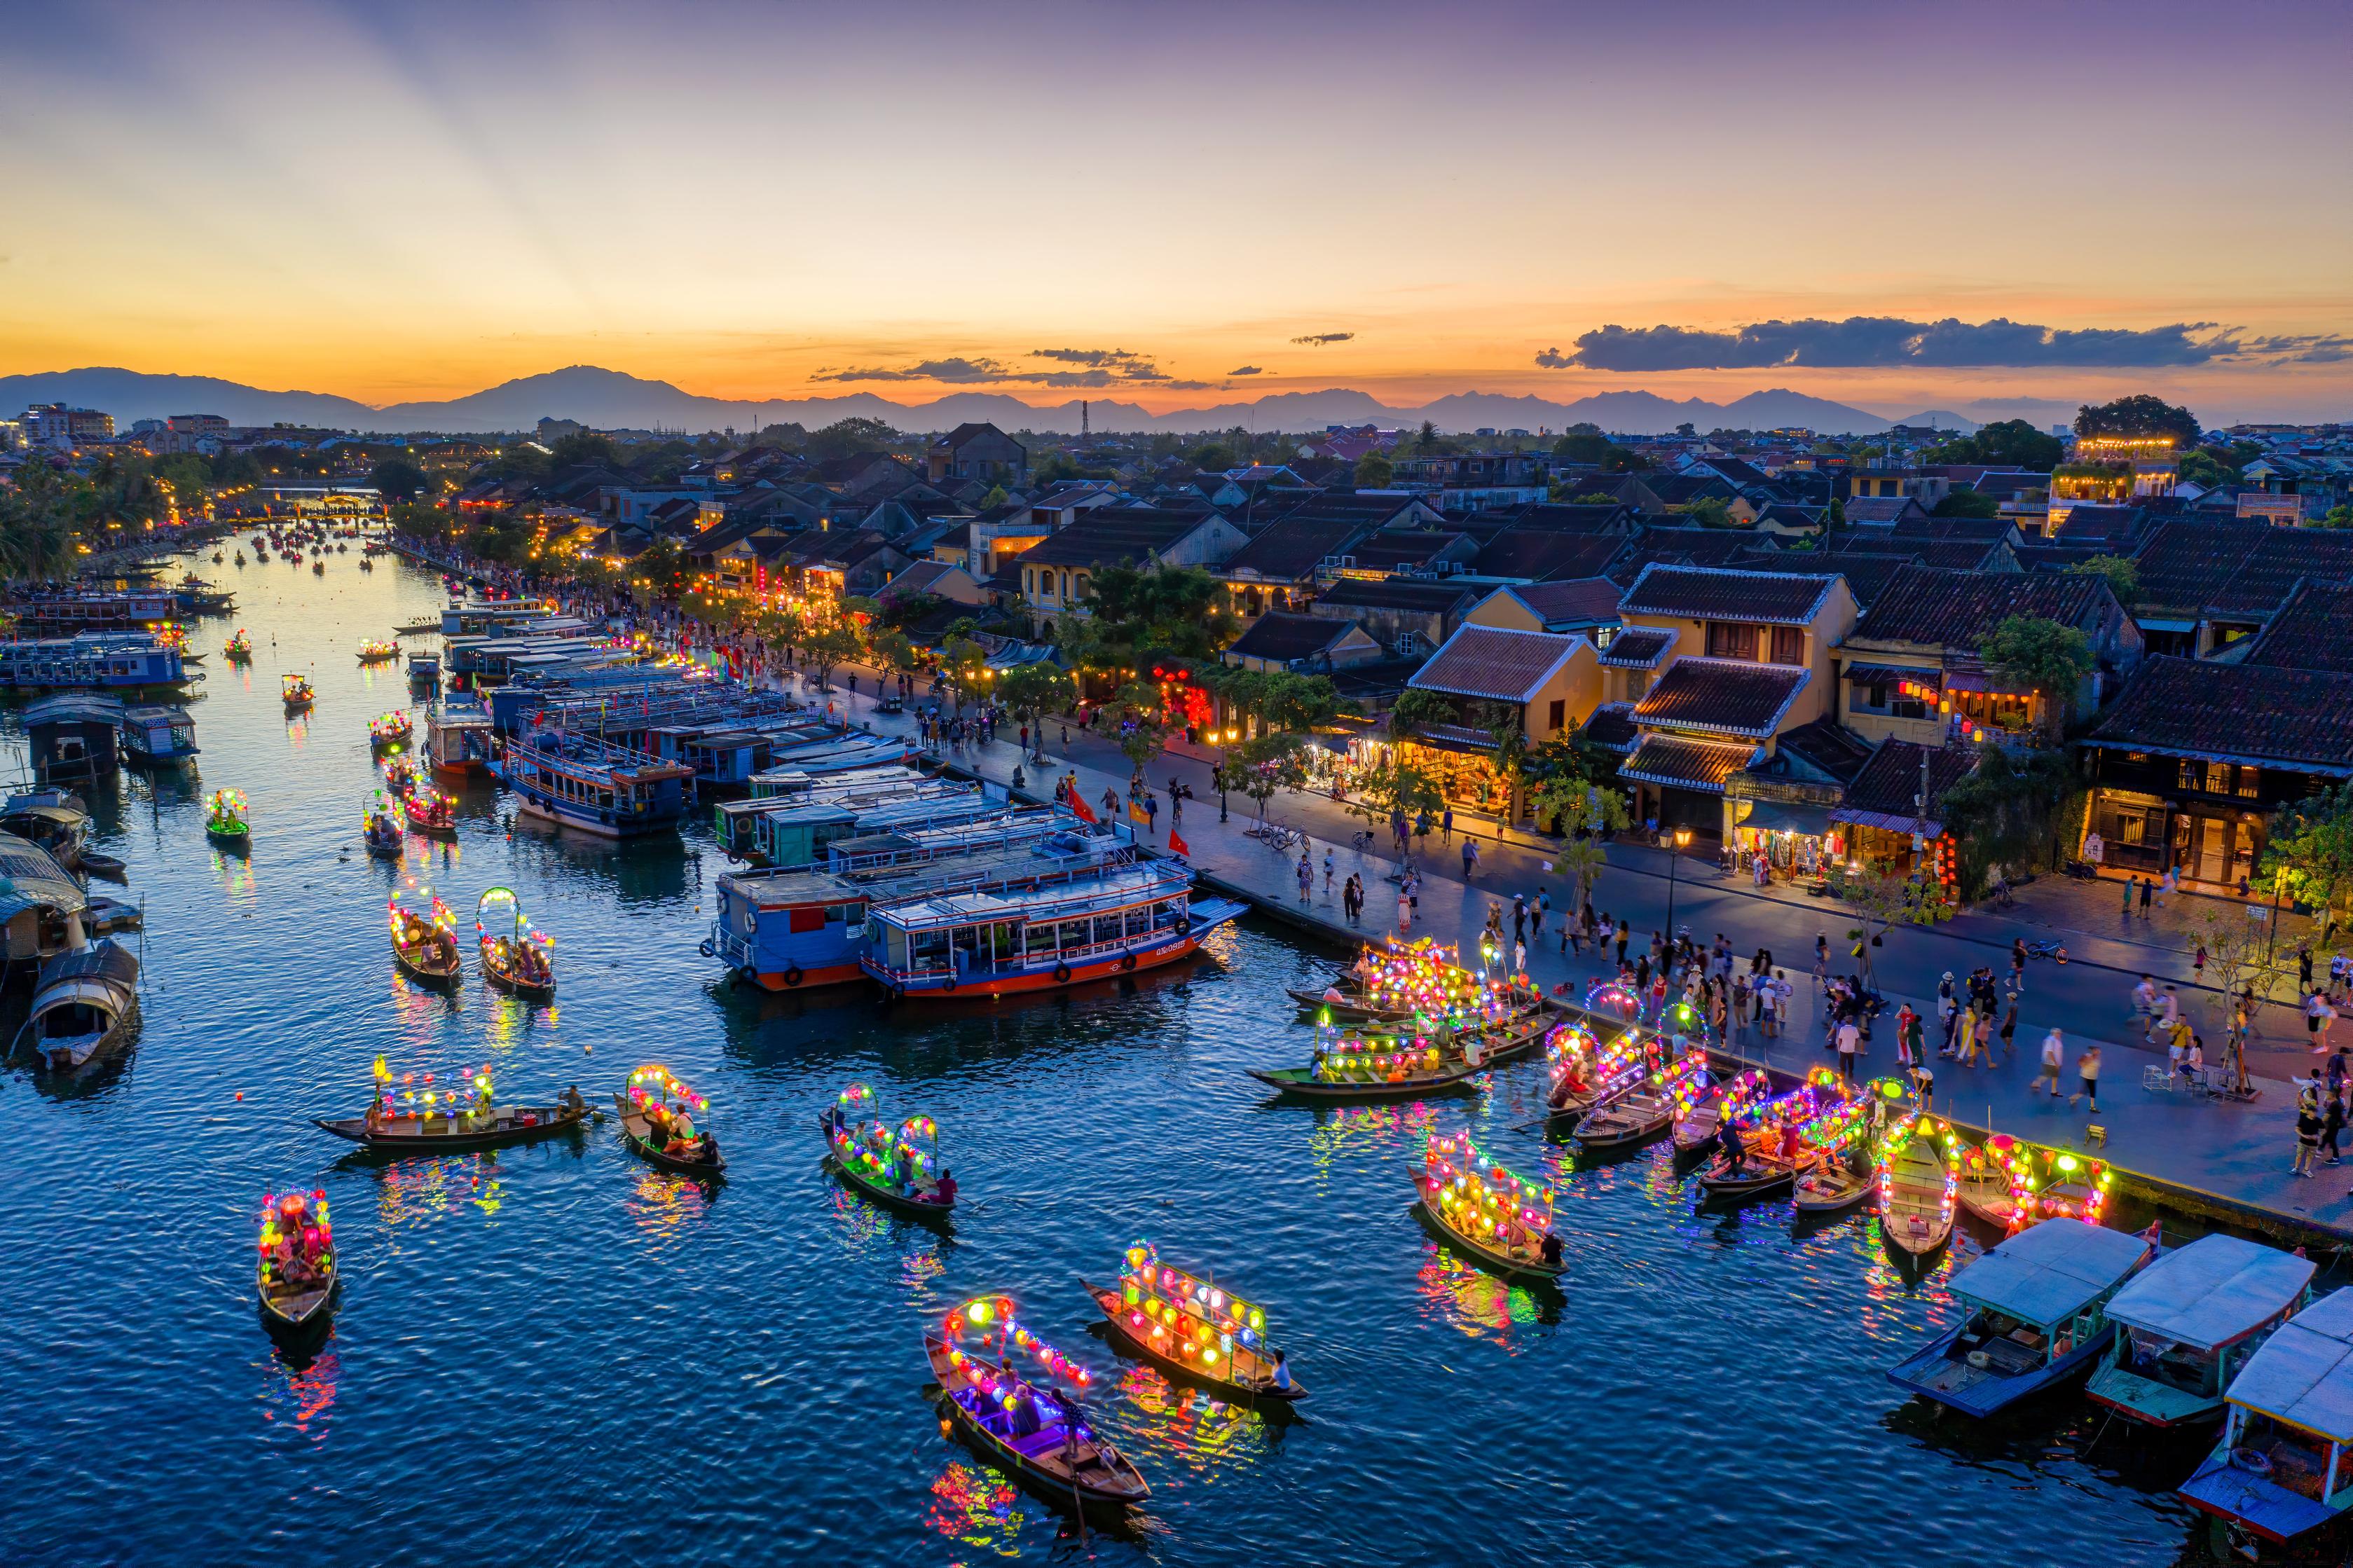 Vietnam tourism art photos, clips honoured